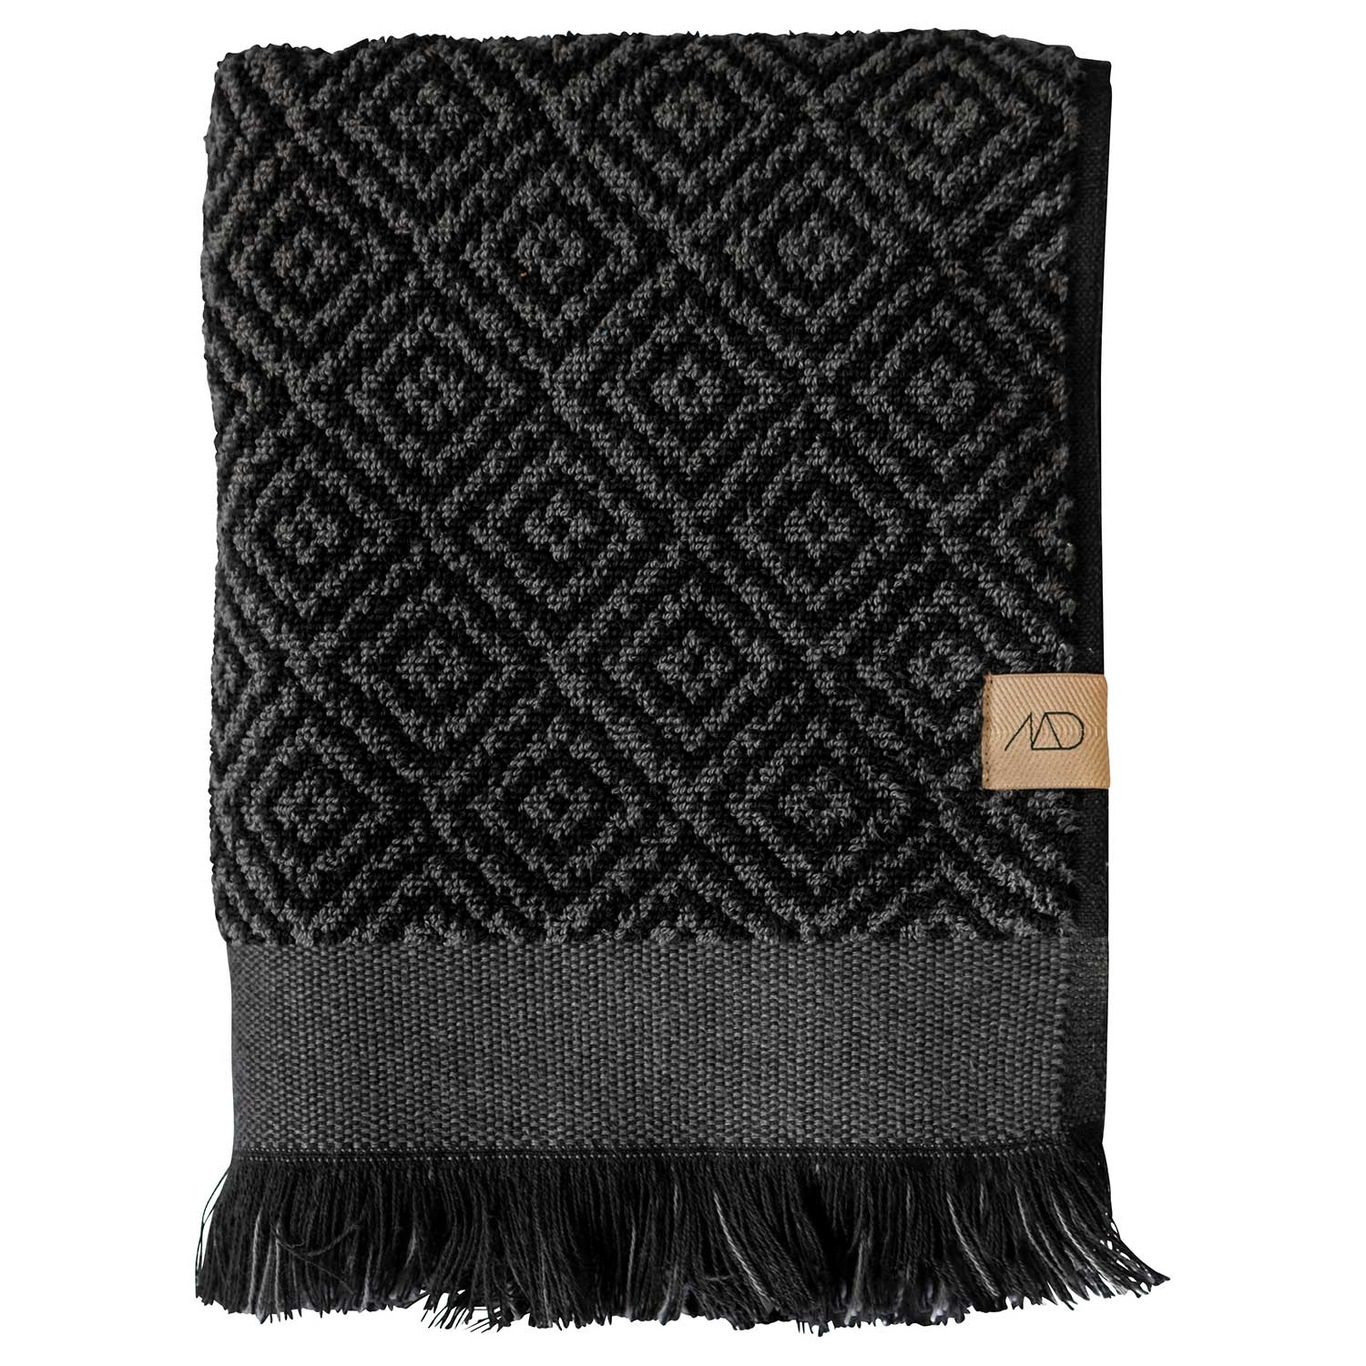 Morocco Guest Towel 2 Pcs, 35x60 cm, Black/Grey